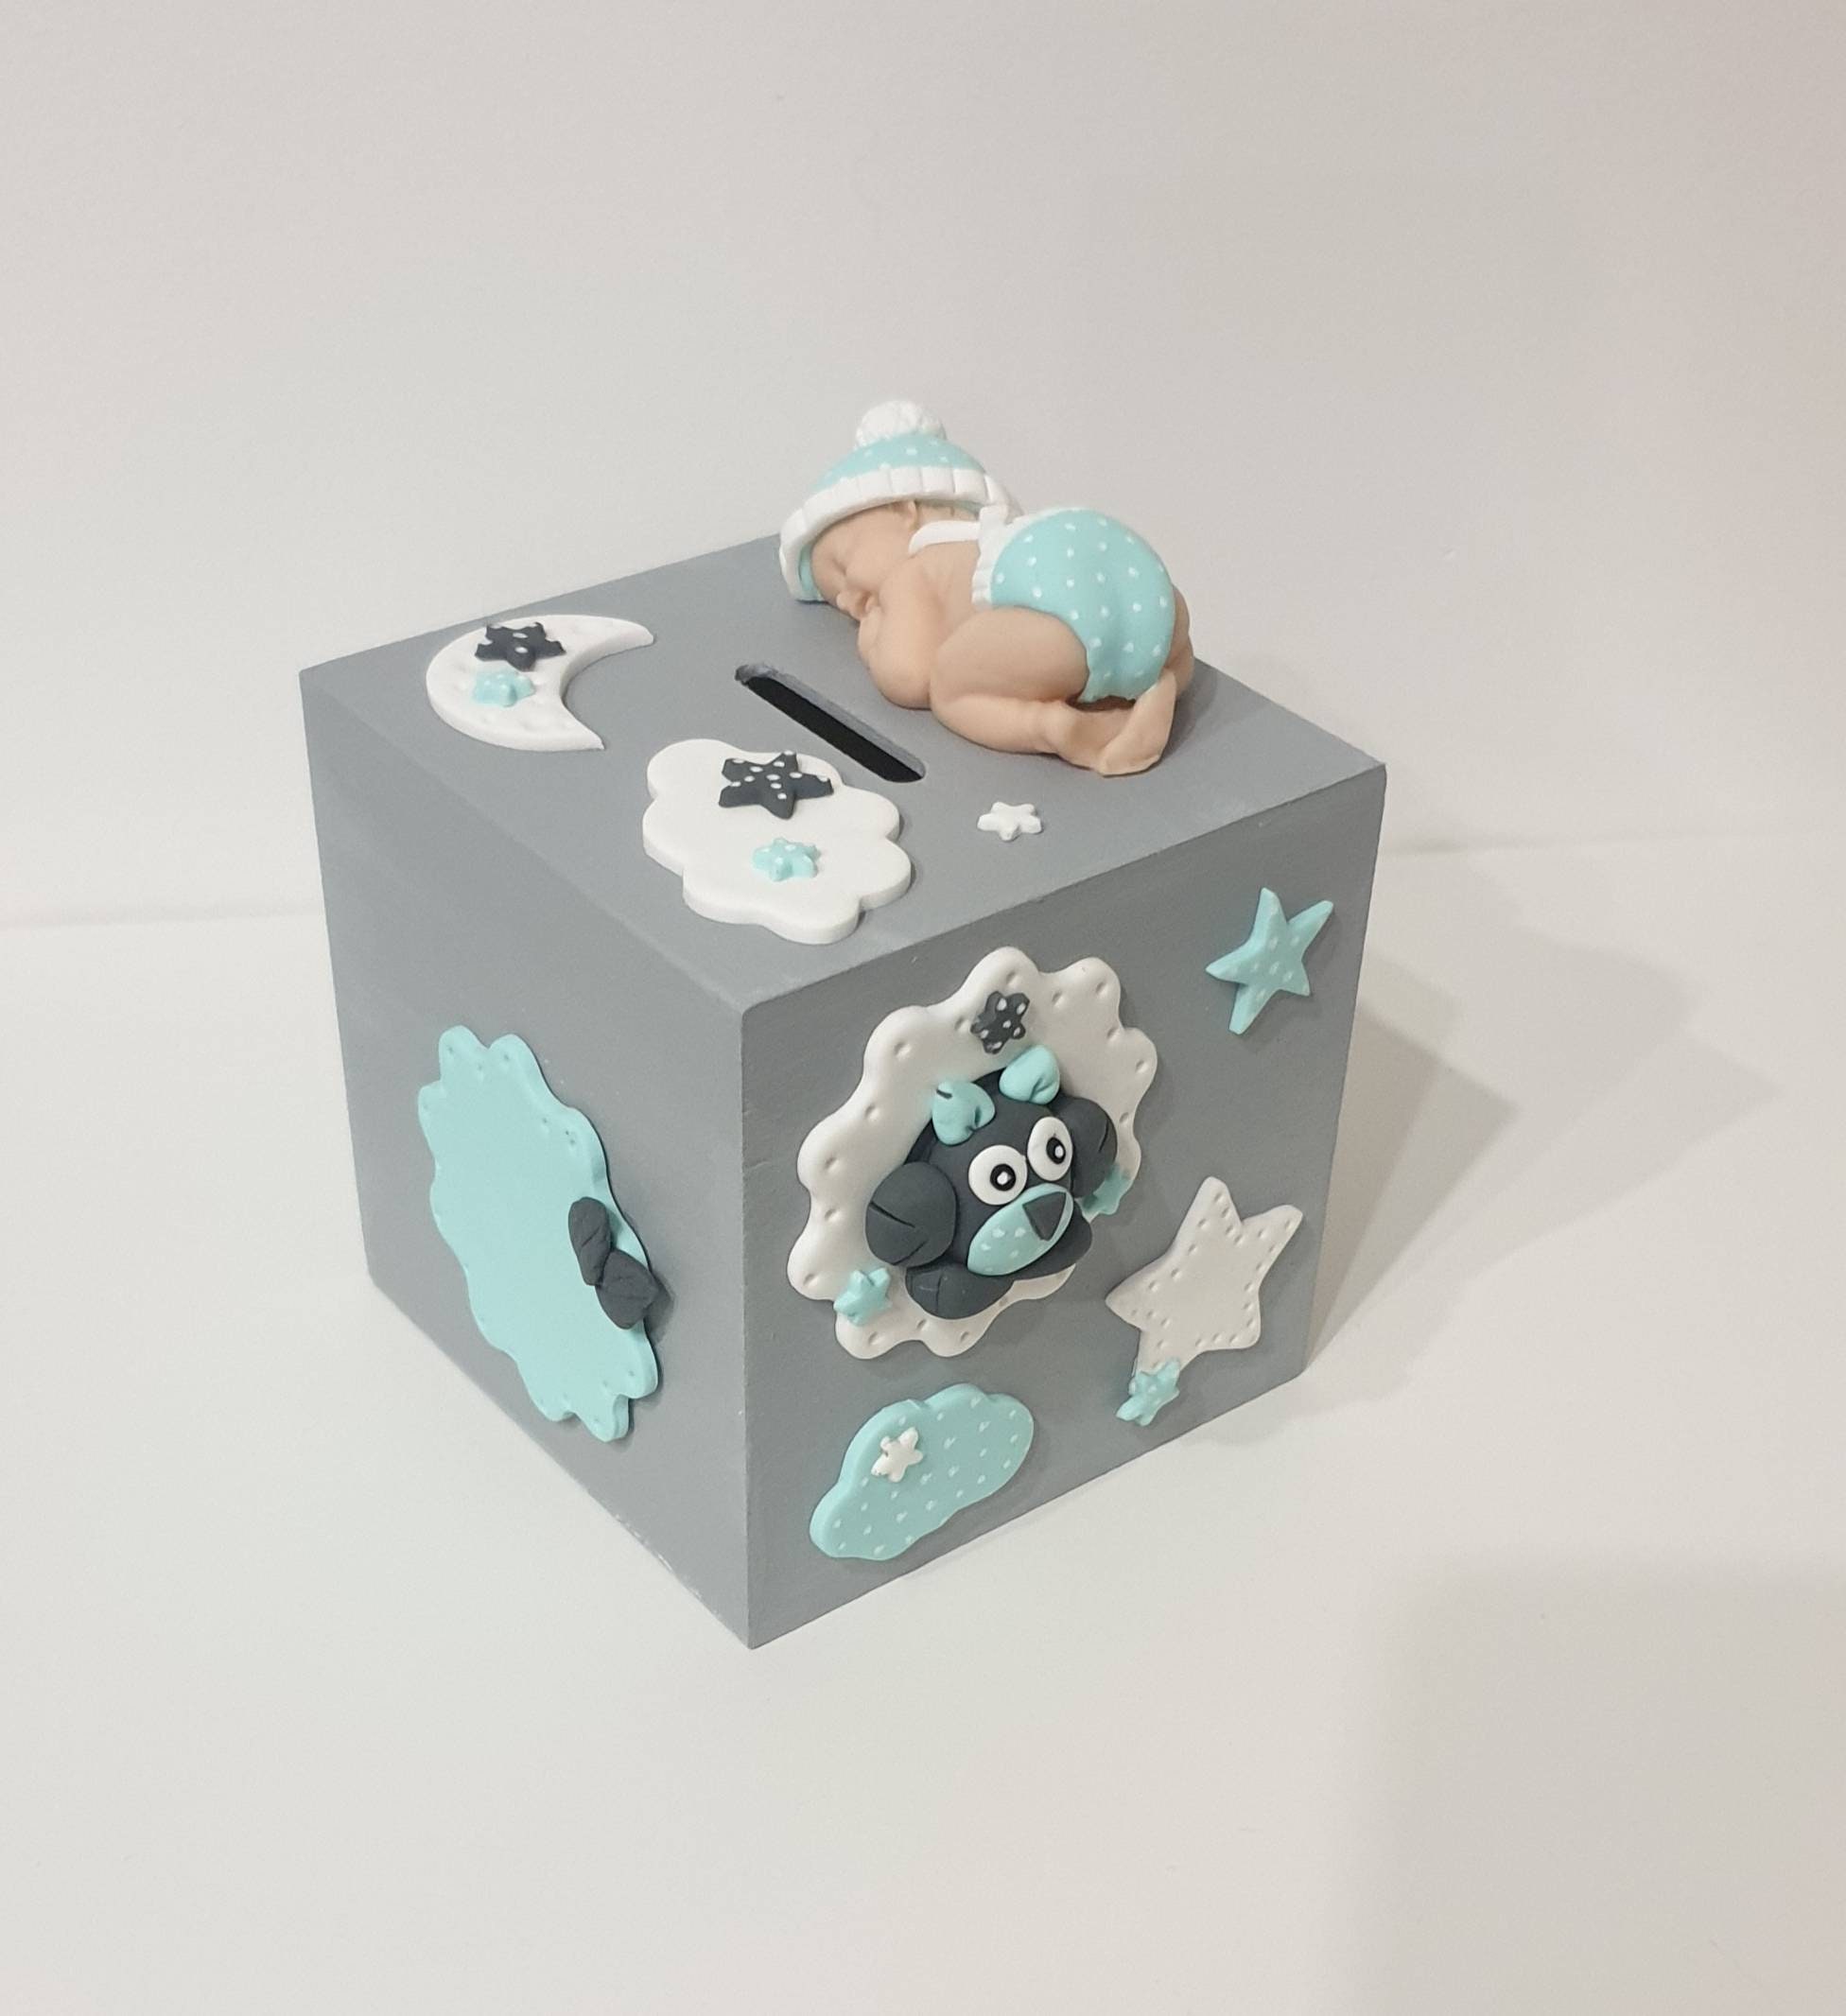 Tirelire + Prénom Bébé/Enfant Cadeau Naissance Étoiles Nuage Lune Chouette Bleu en Fimo